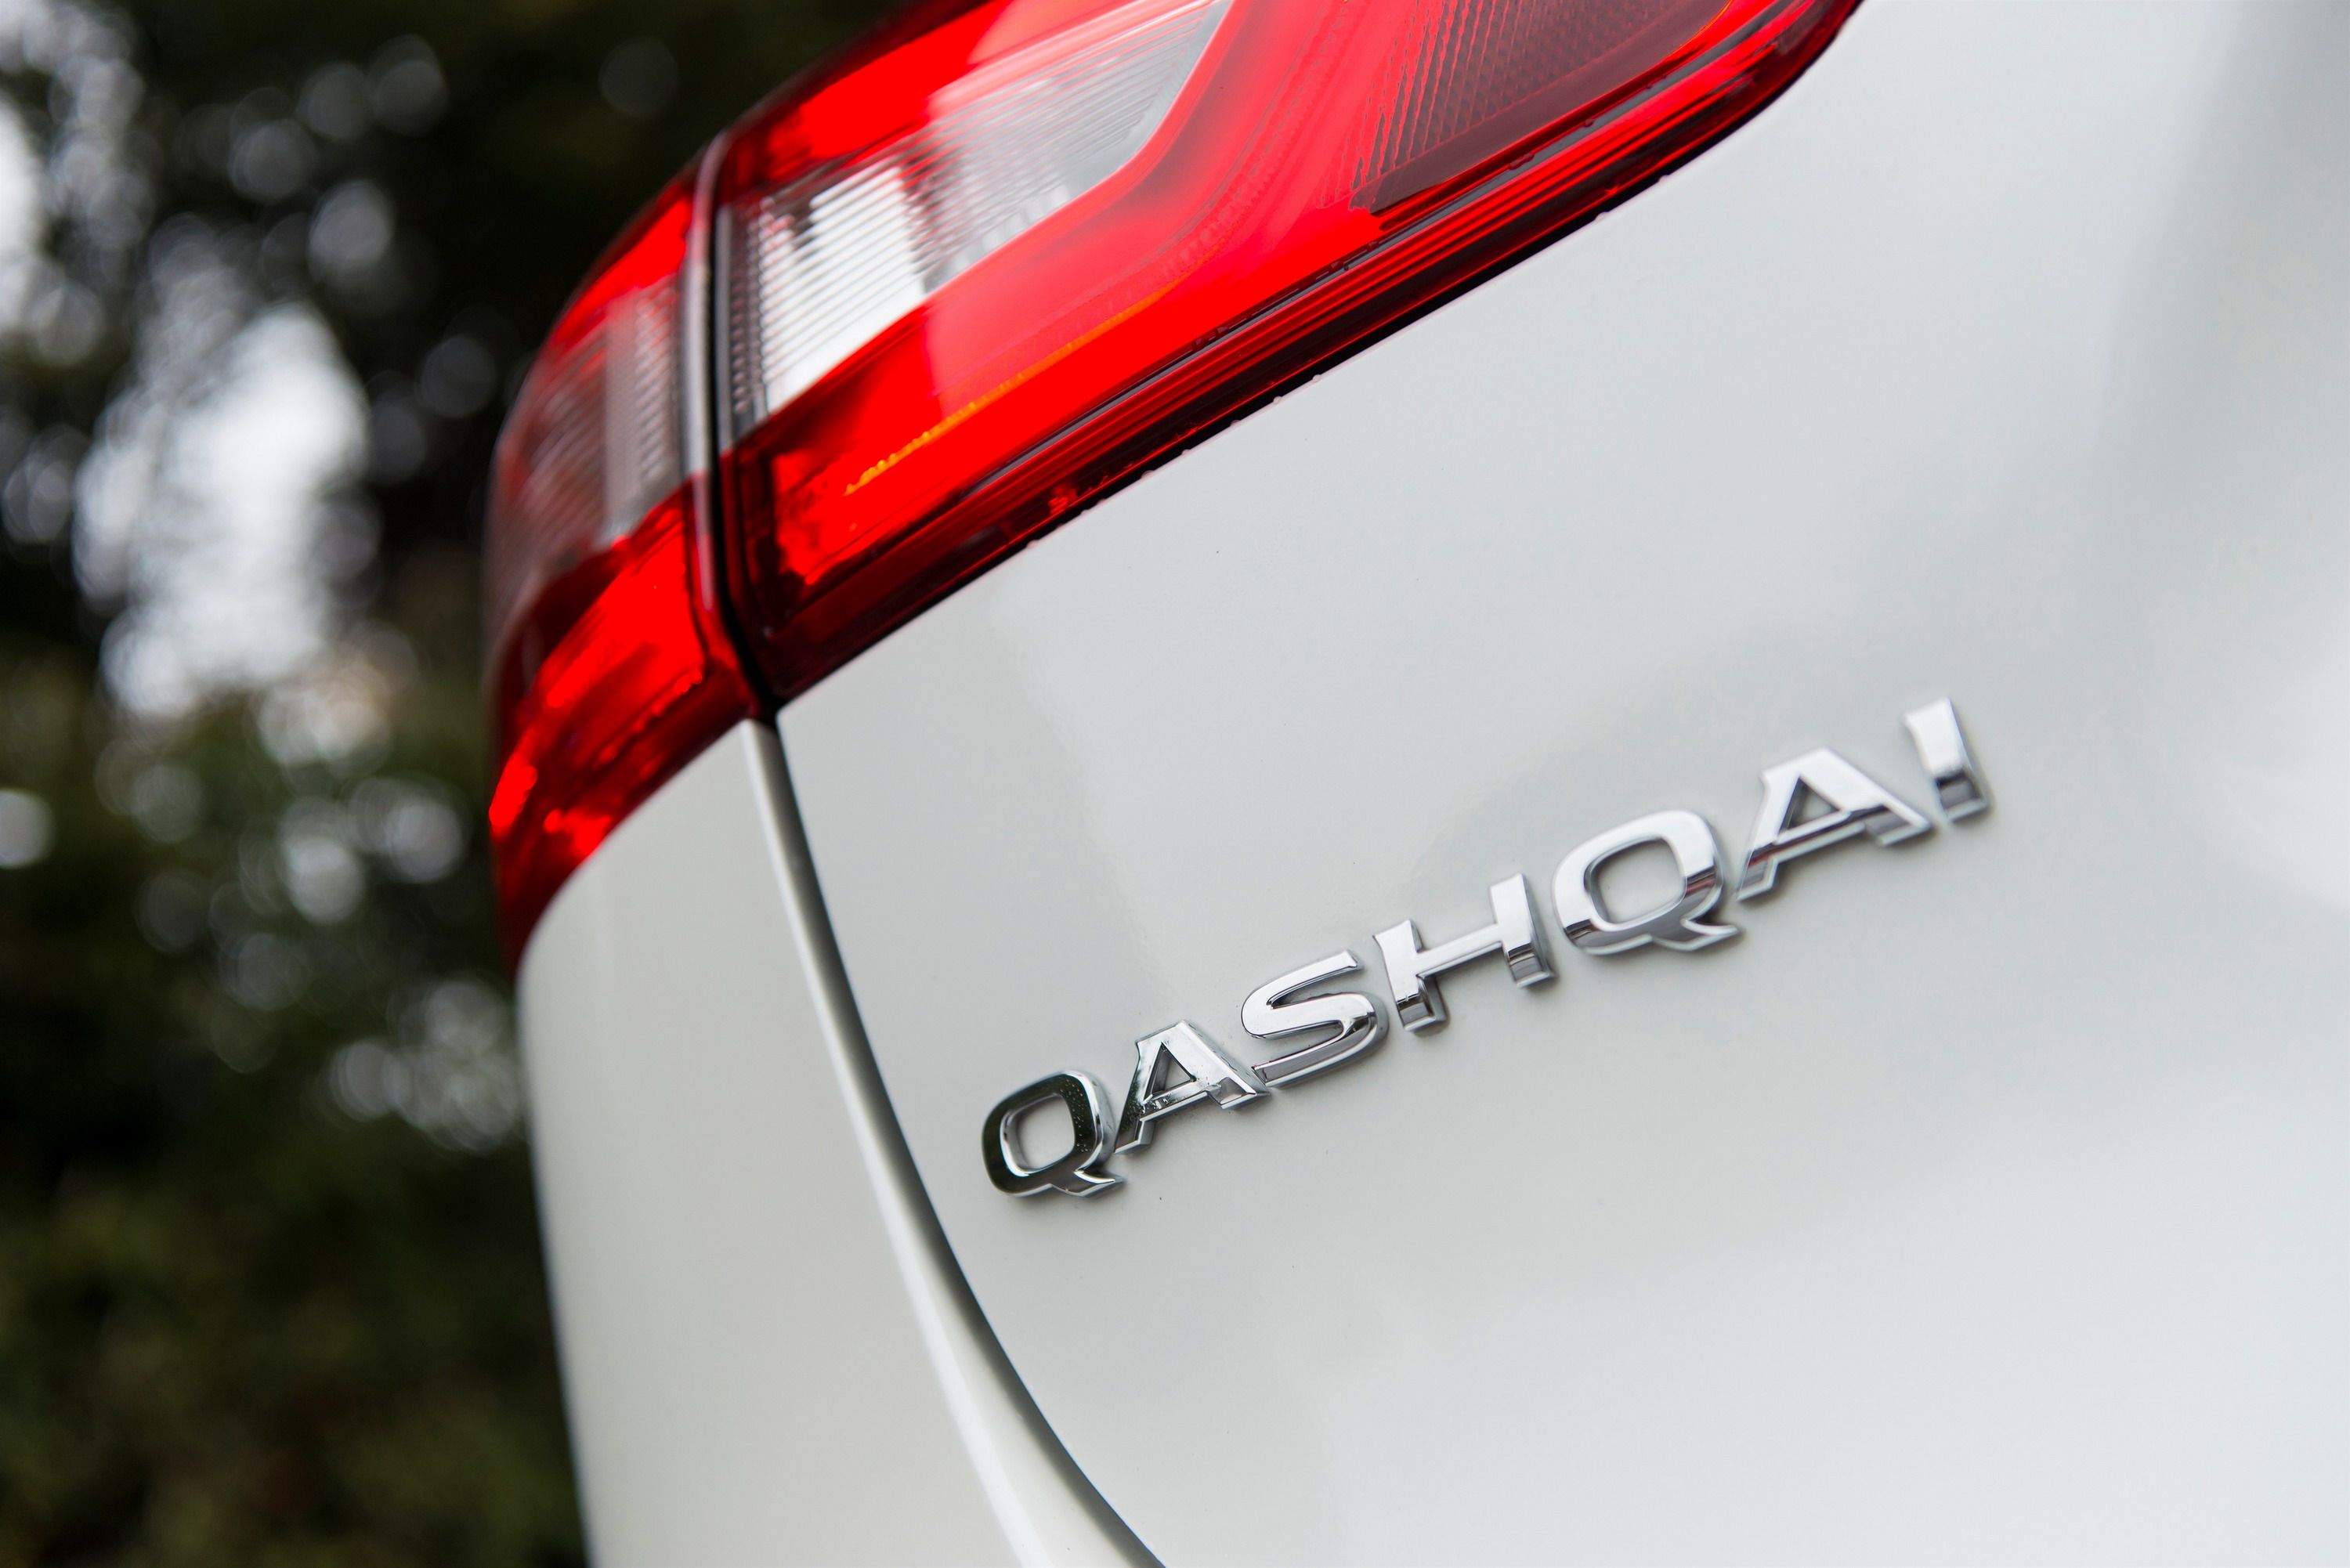 2015 - 2018 Nissan Qashqai